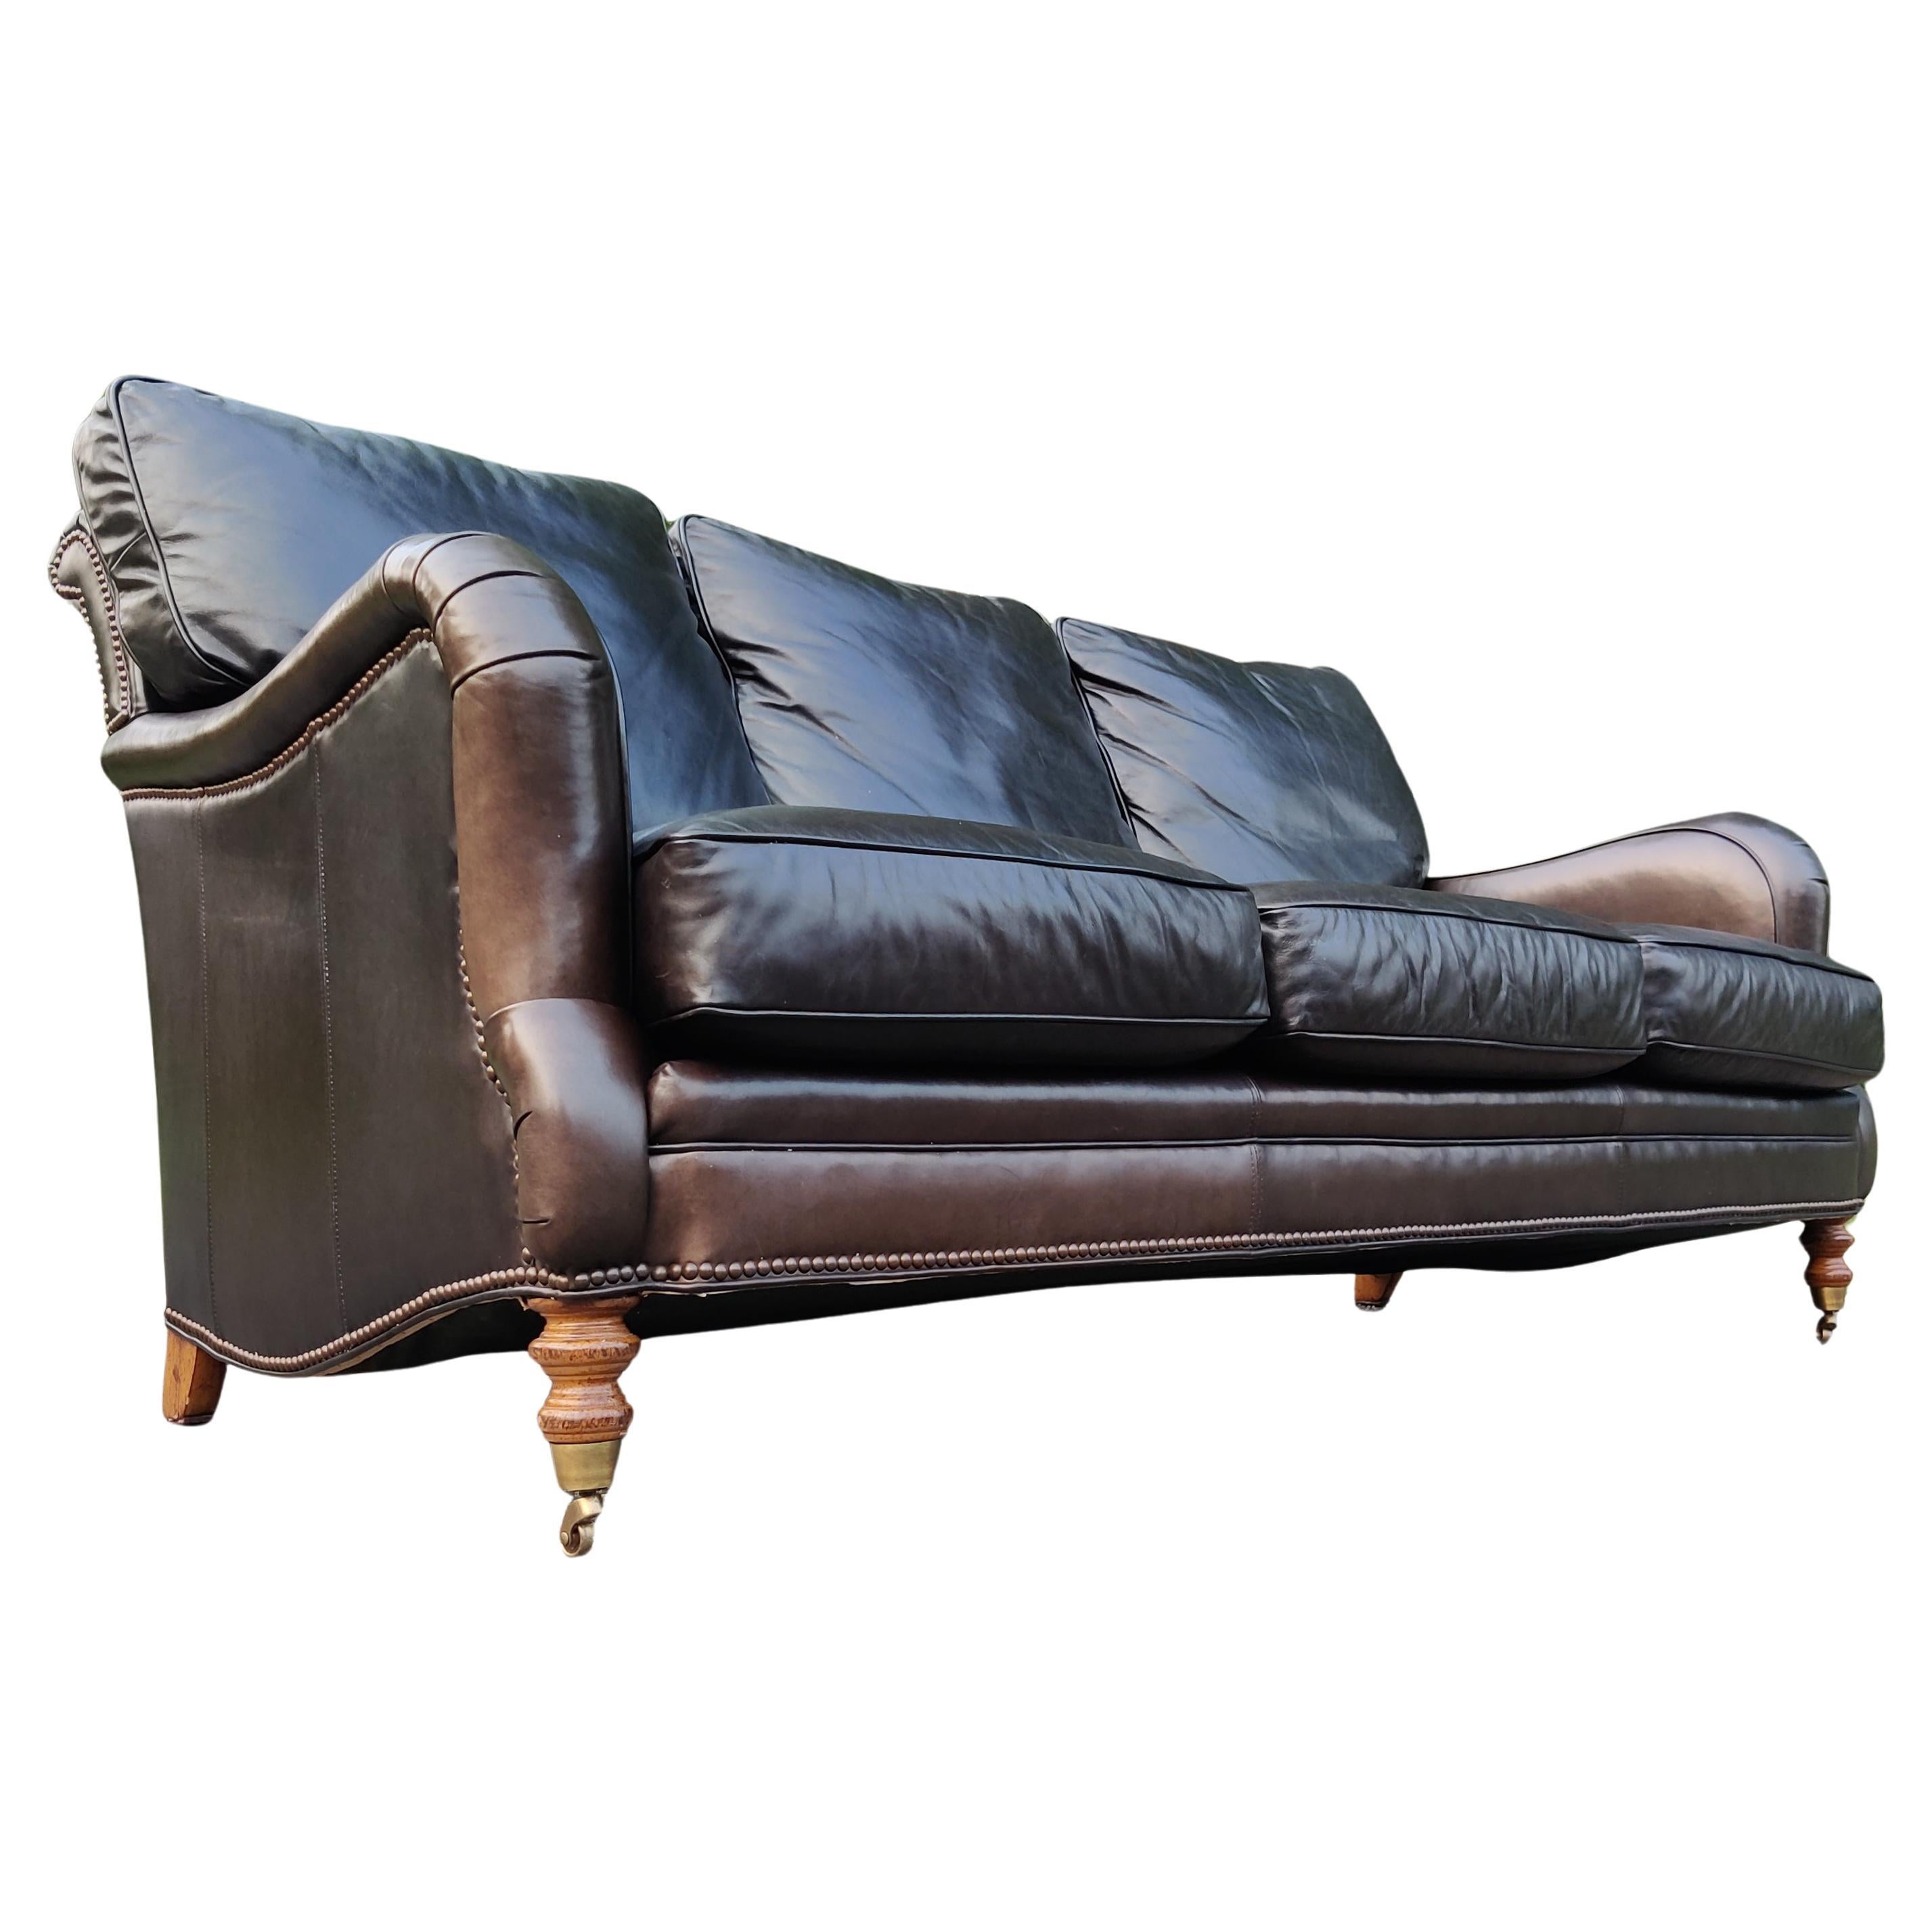 Englisches 3-Sitzer-Sofa „Espresso“ aus Leder und Messing im Regency-Stil von George Smith im Regency-Stil